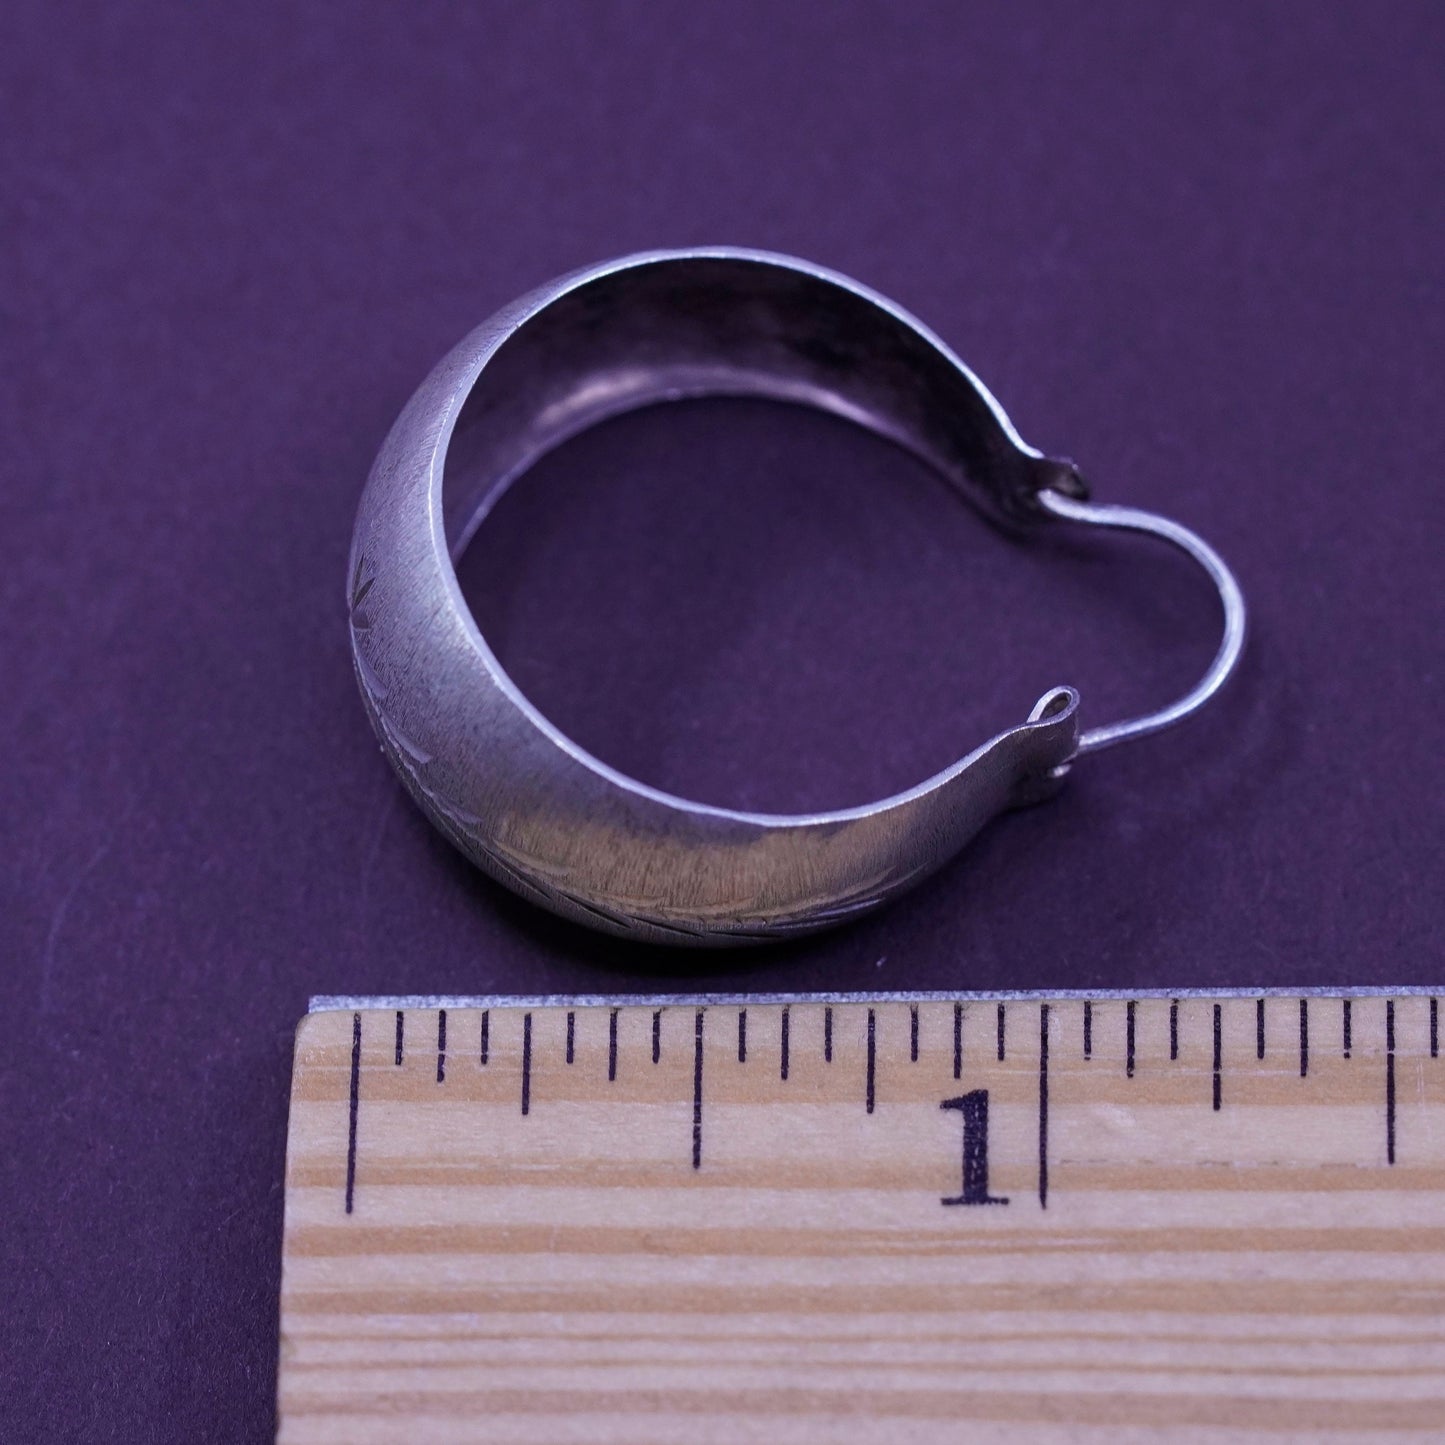 1”, Vintage Sterling silver handmade earrings, textured 950 hoops